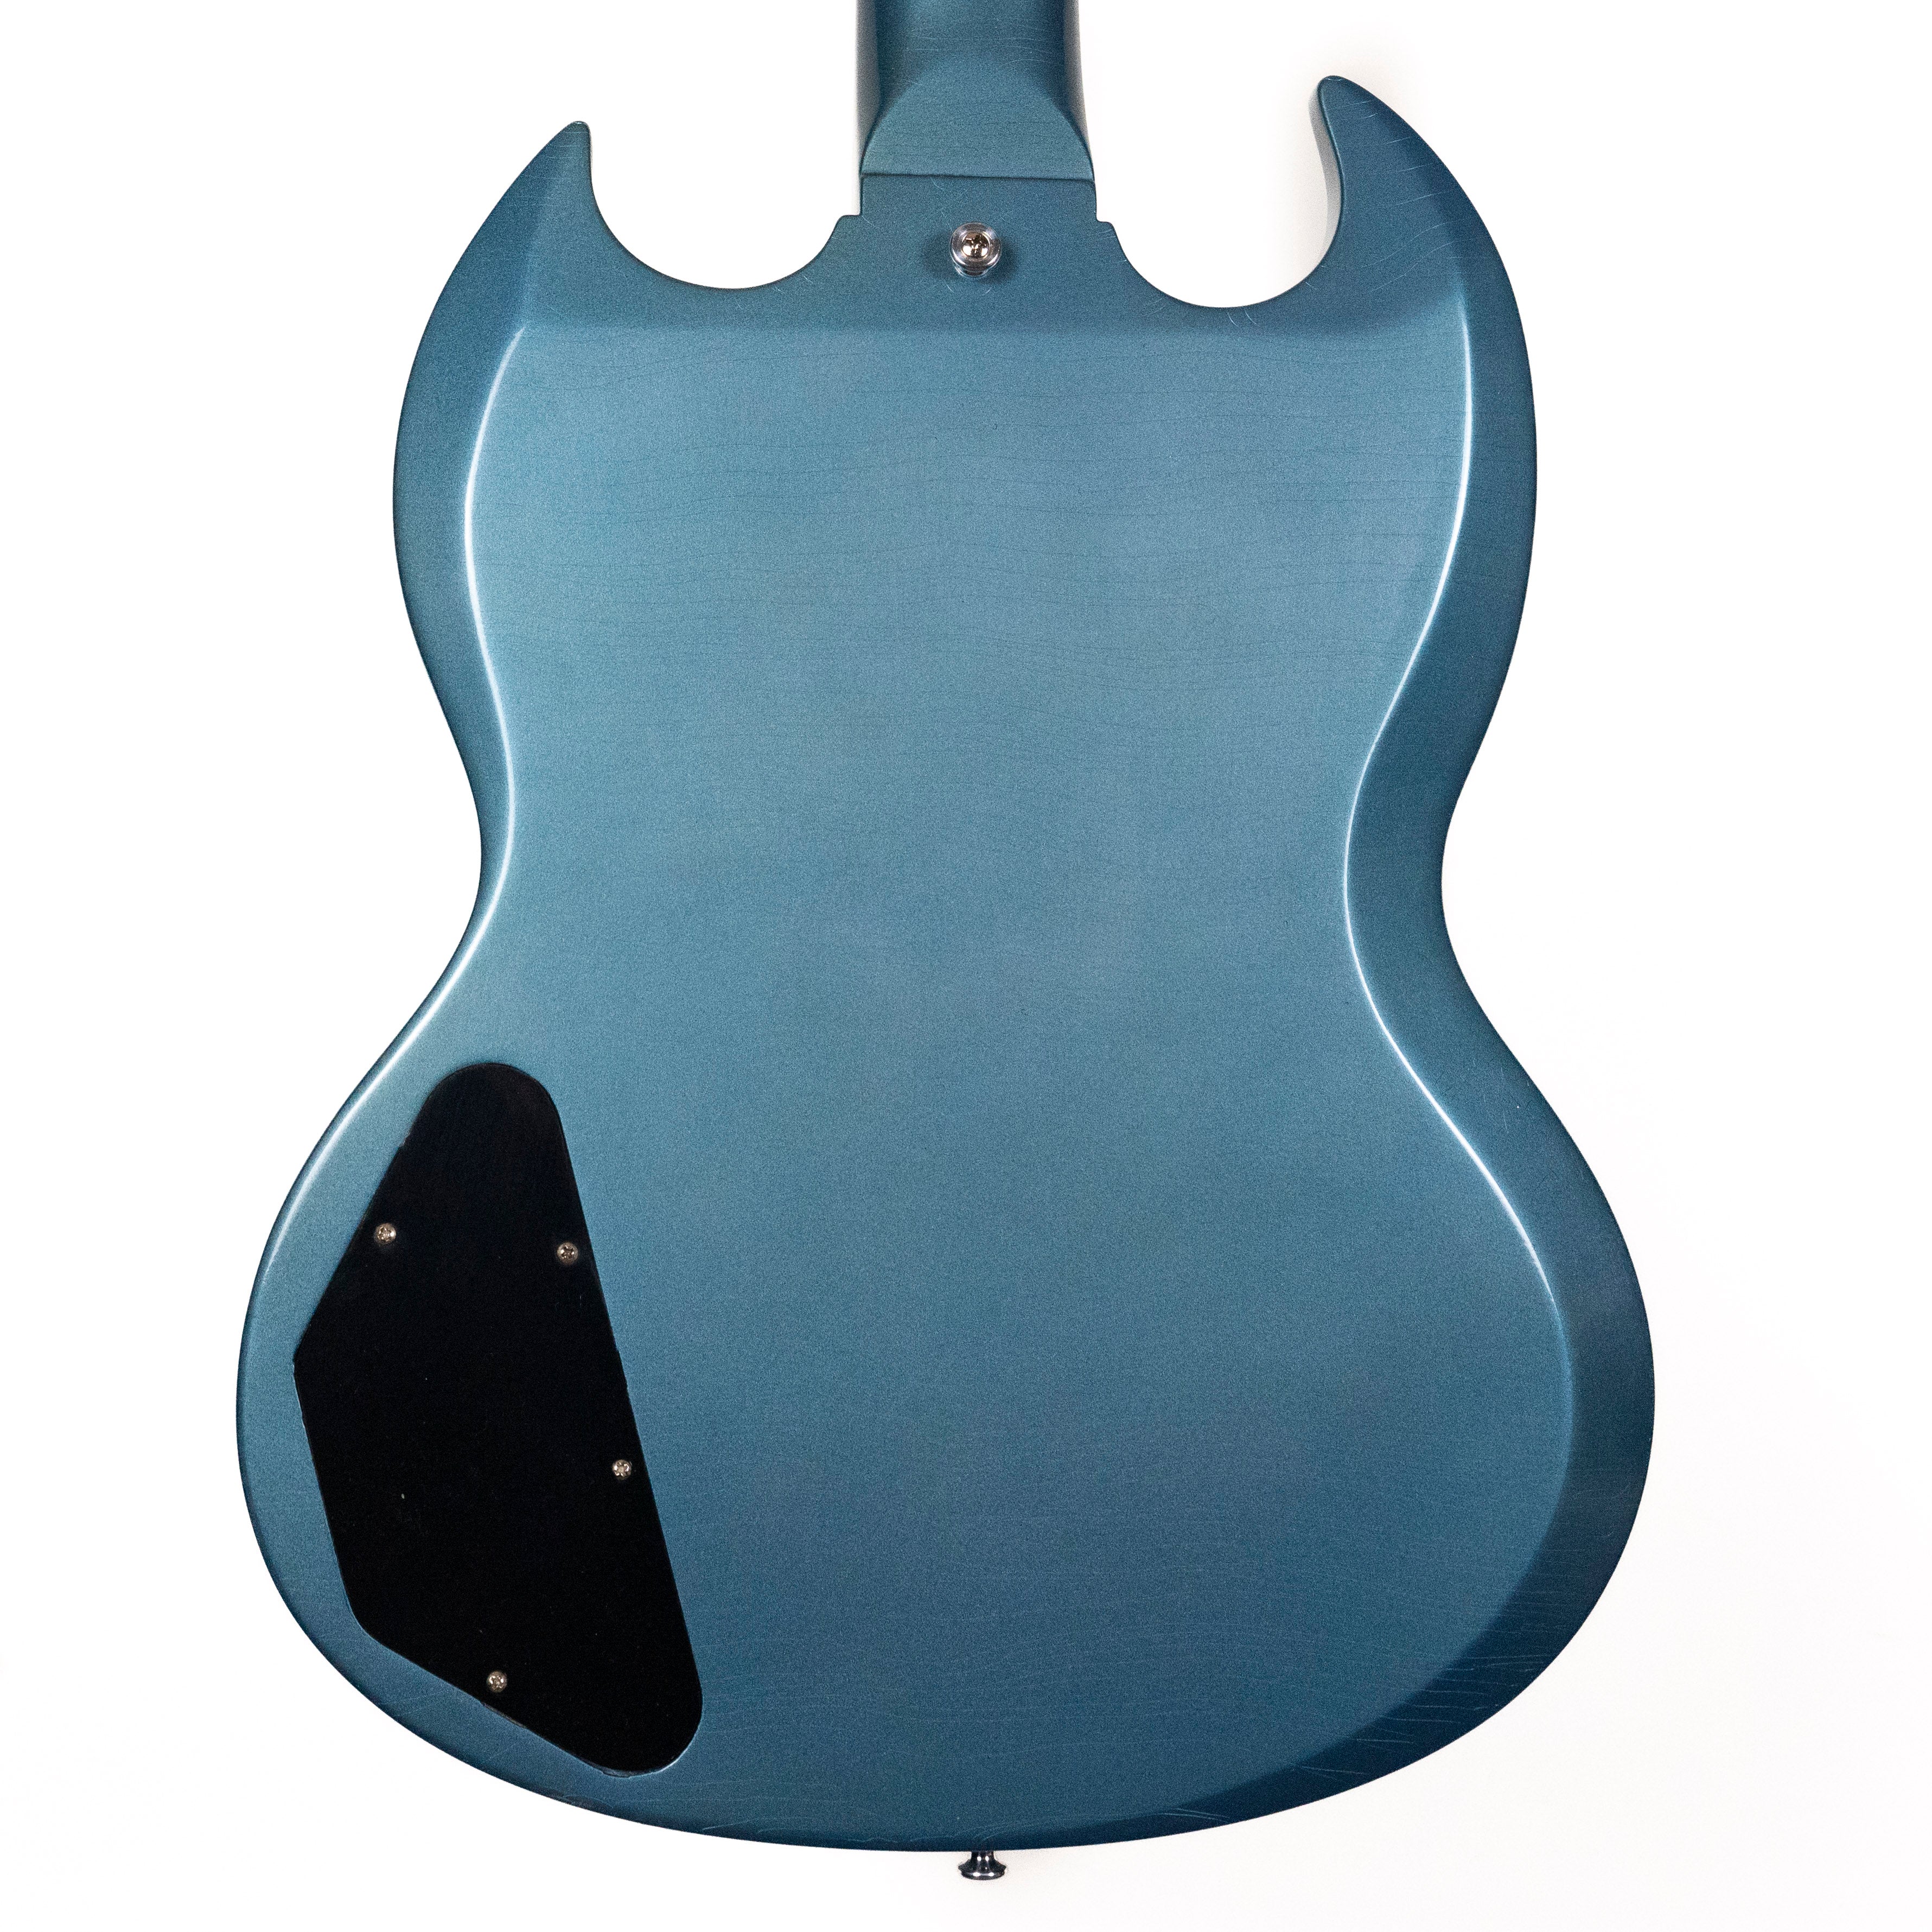 Gibson Custom 1964 SG Standard Reissue w/ Maestro Ultra Light Aged Pelham Blue